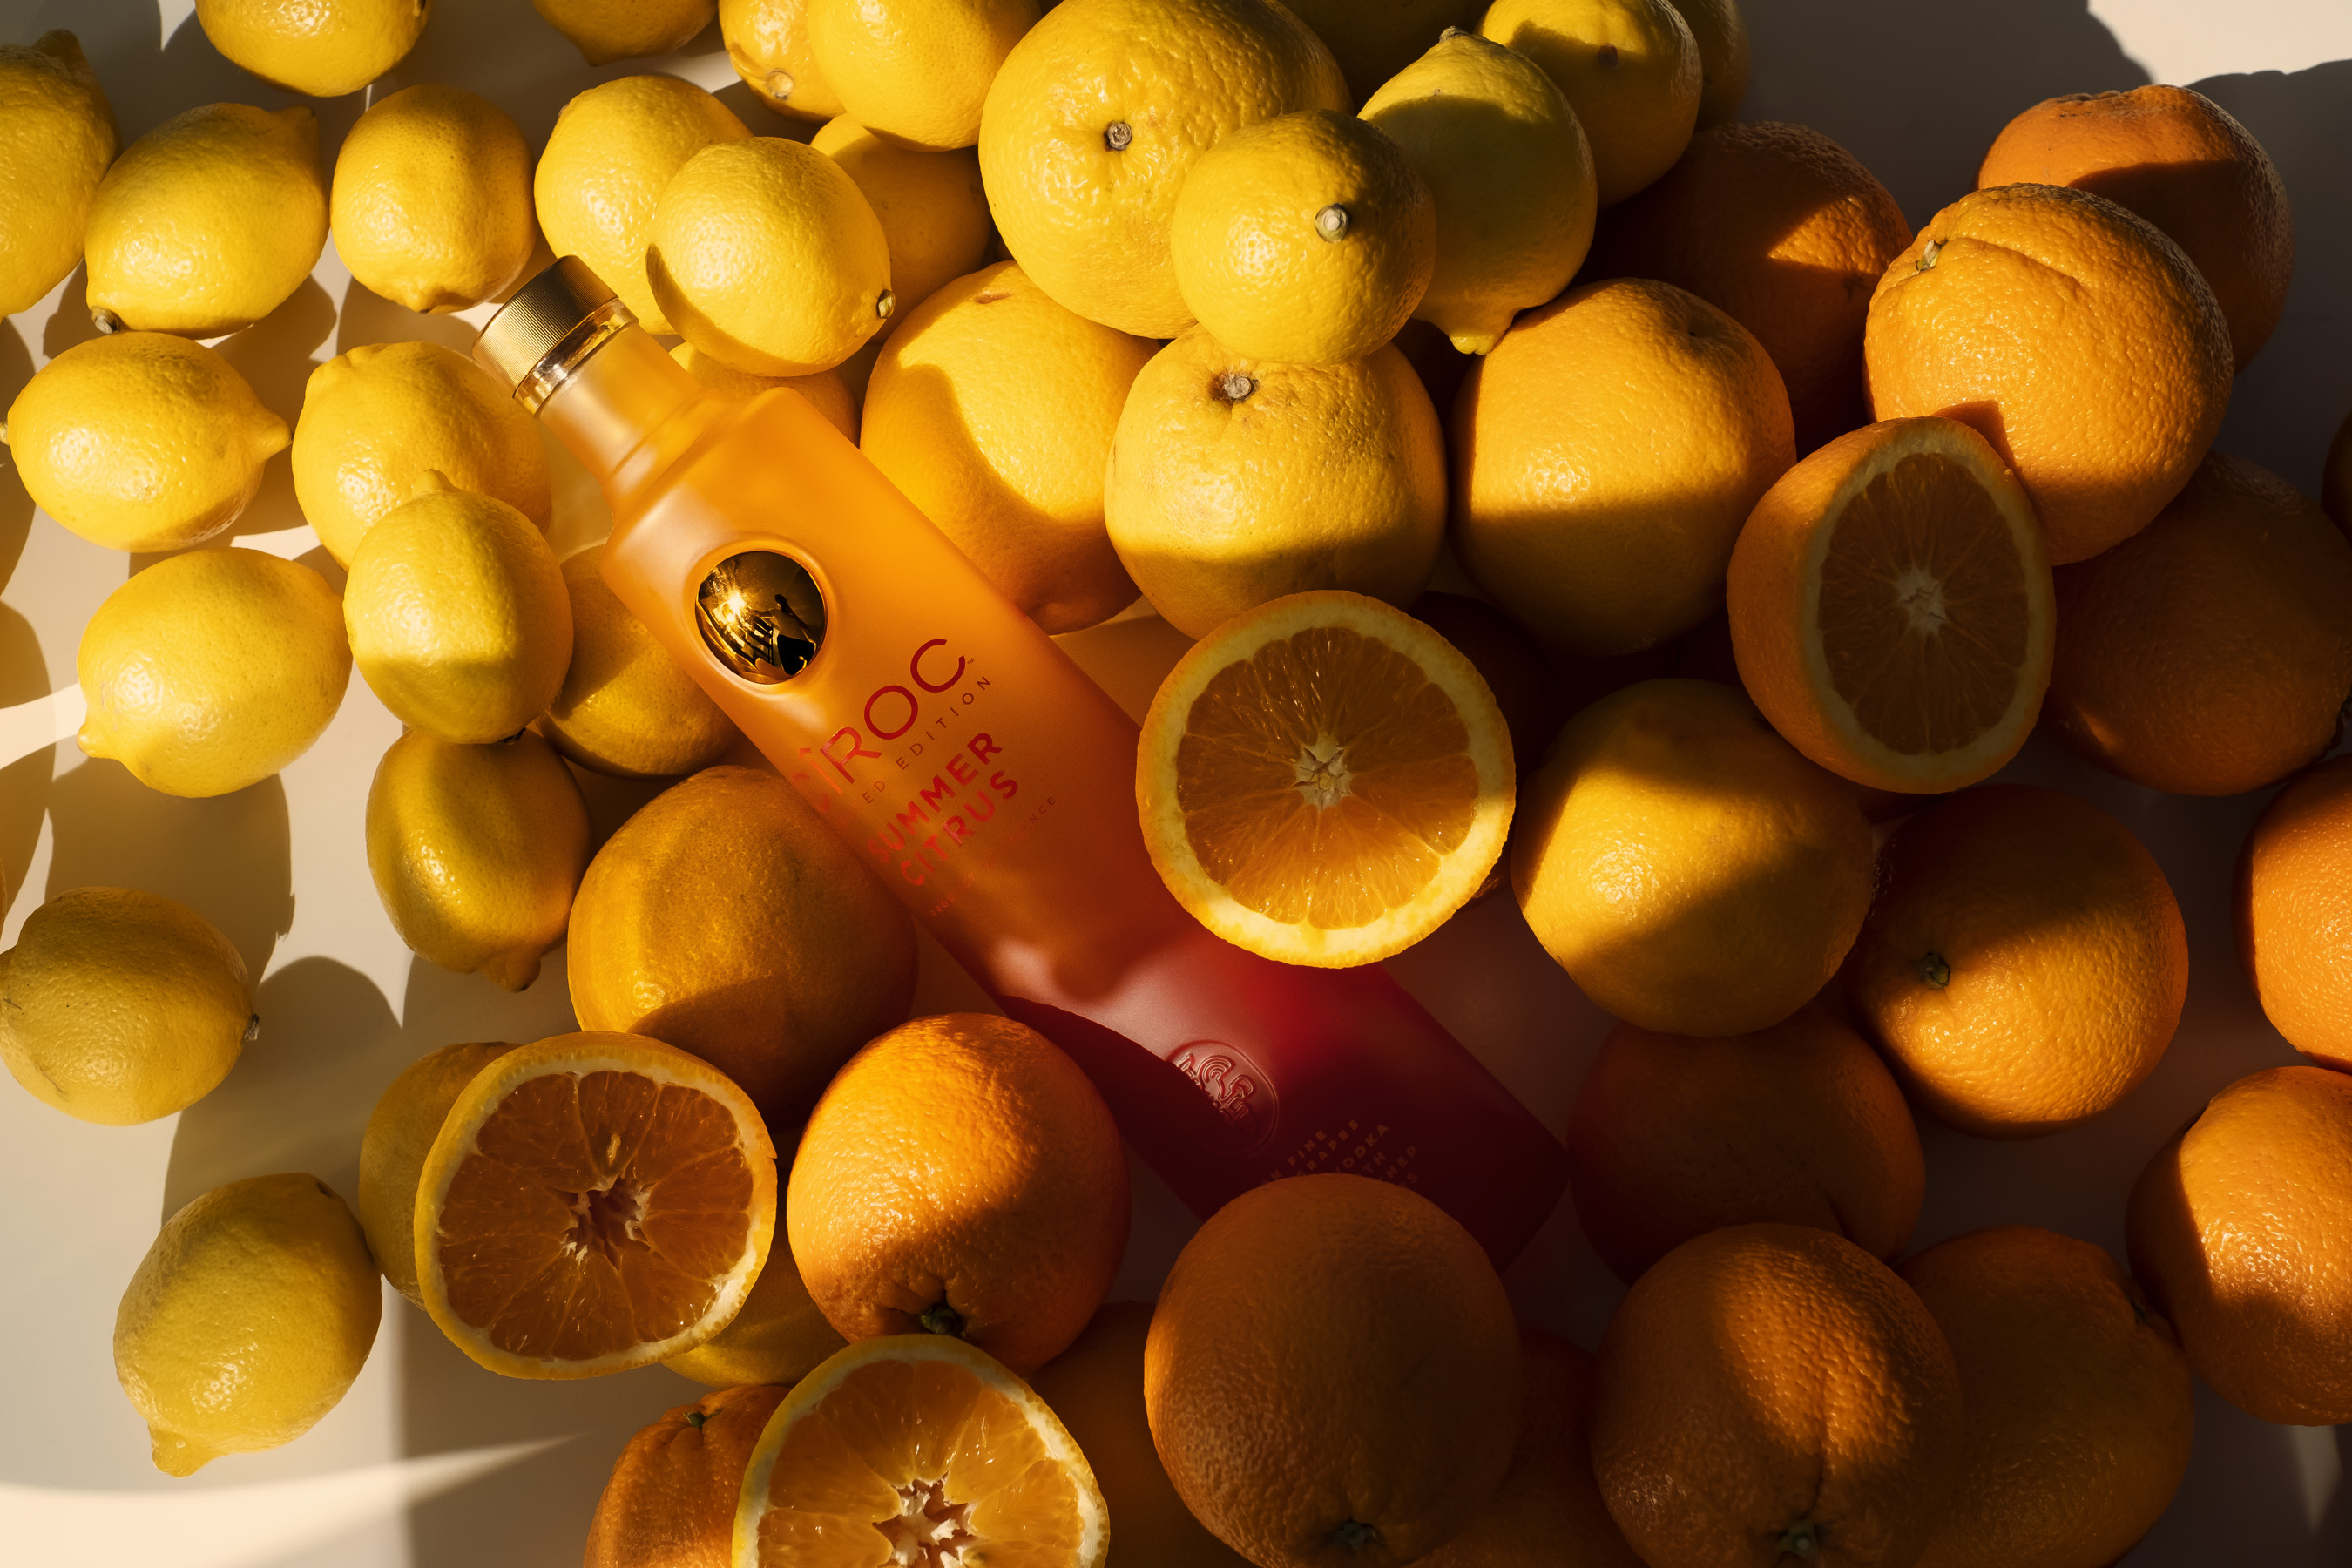 CÎROC Summer Citrus, infundido con una mezcla de sabores naturales de naranja y cítricos